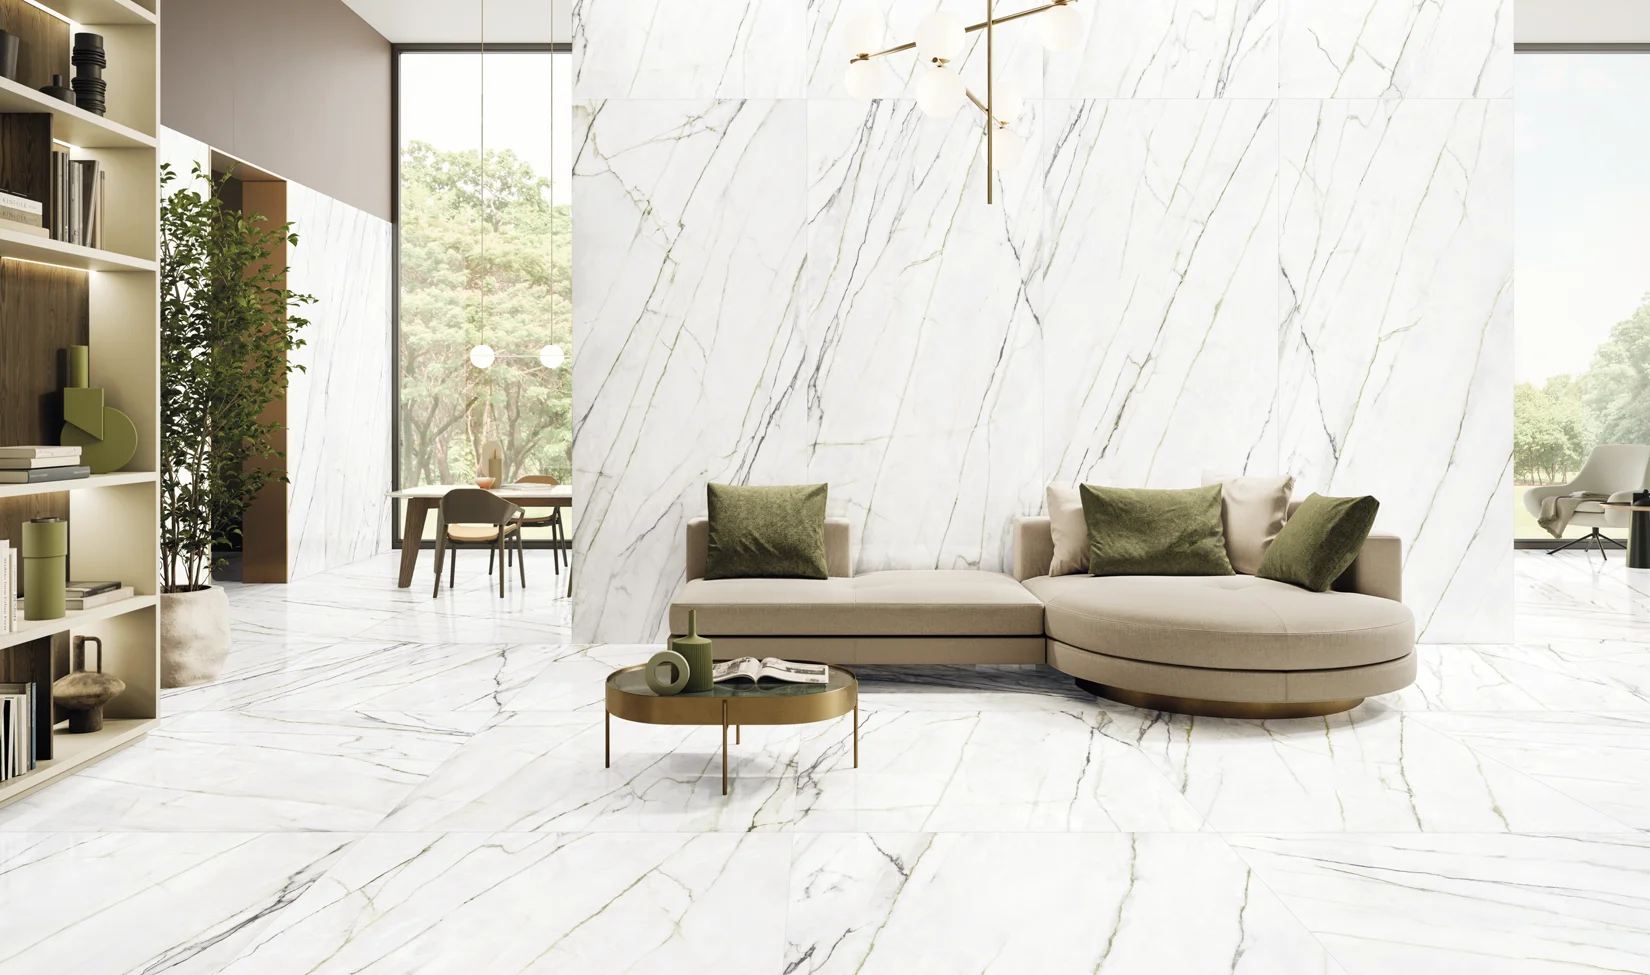 Soggiorno lussuoso con pavimento in gres porcellanato effetto marmo della collezione Elements Lux versione Calacatta Verde, mobili contemporanei e vista su giardino esterno.